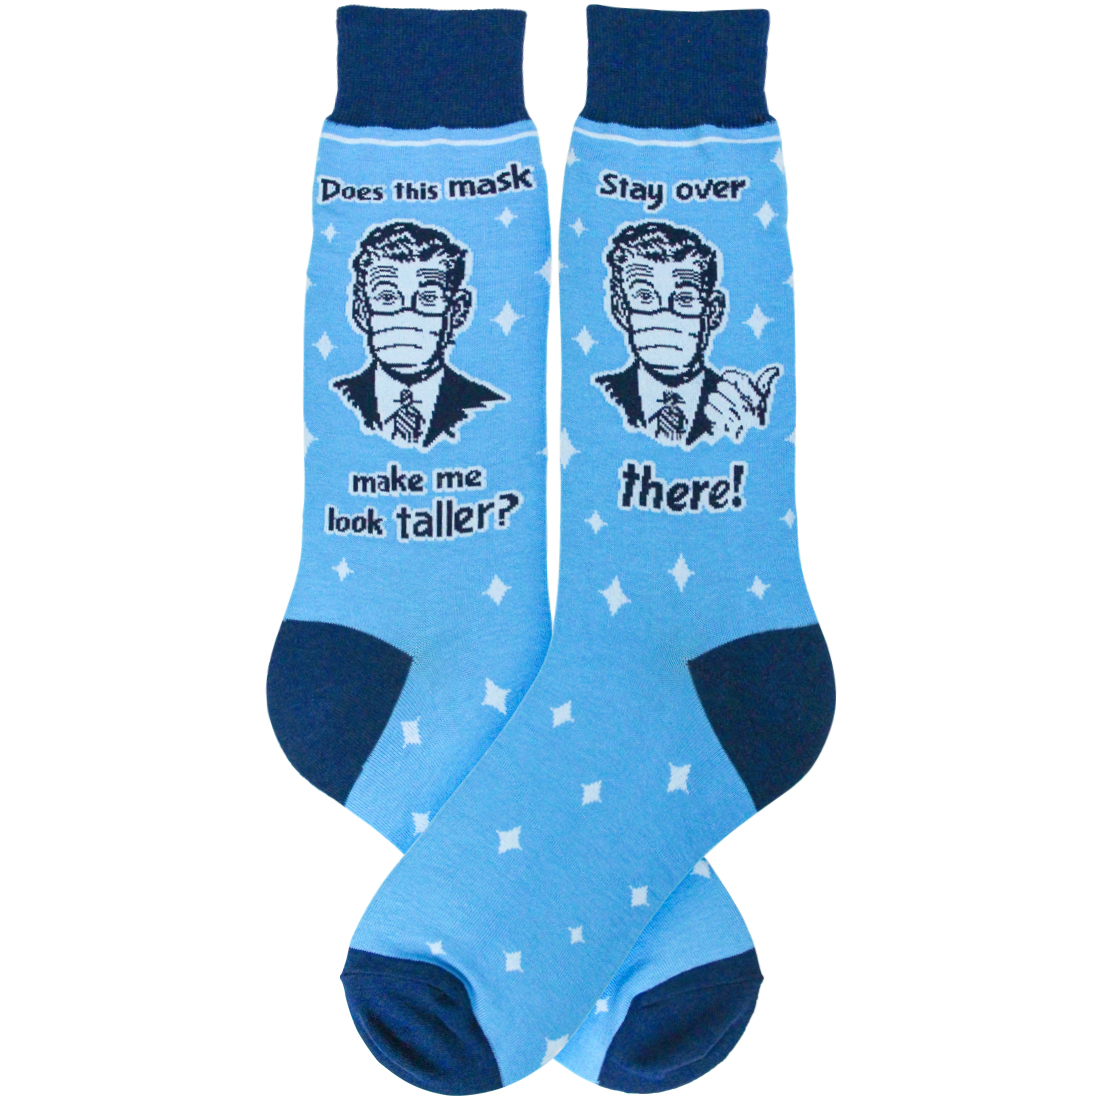 Funny Novelty Mask Socks for Men | Foot Traffic